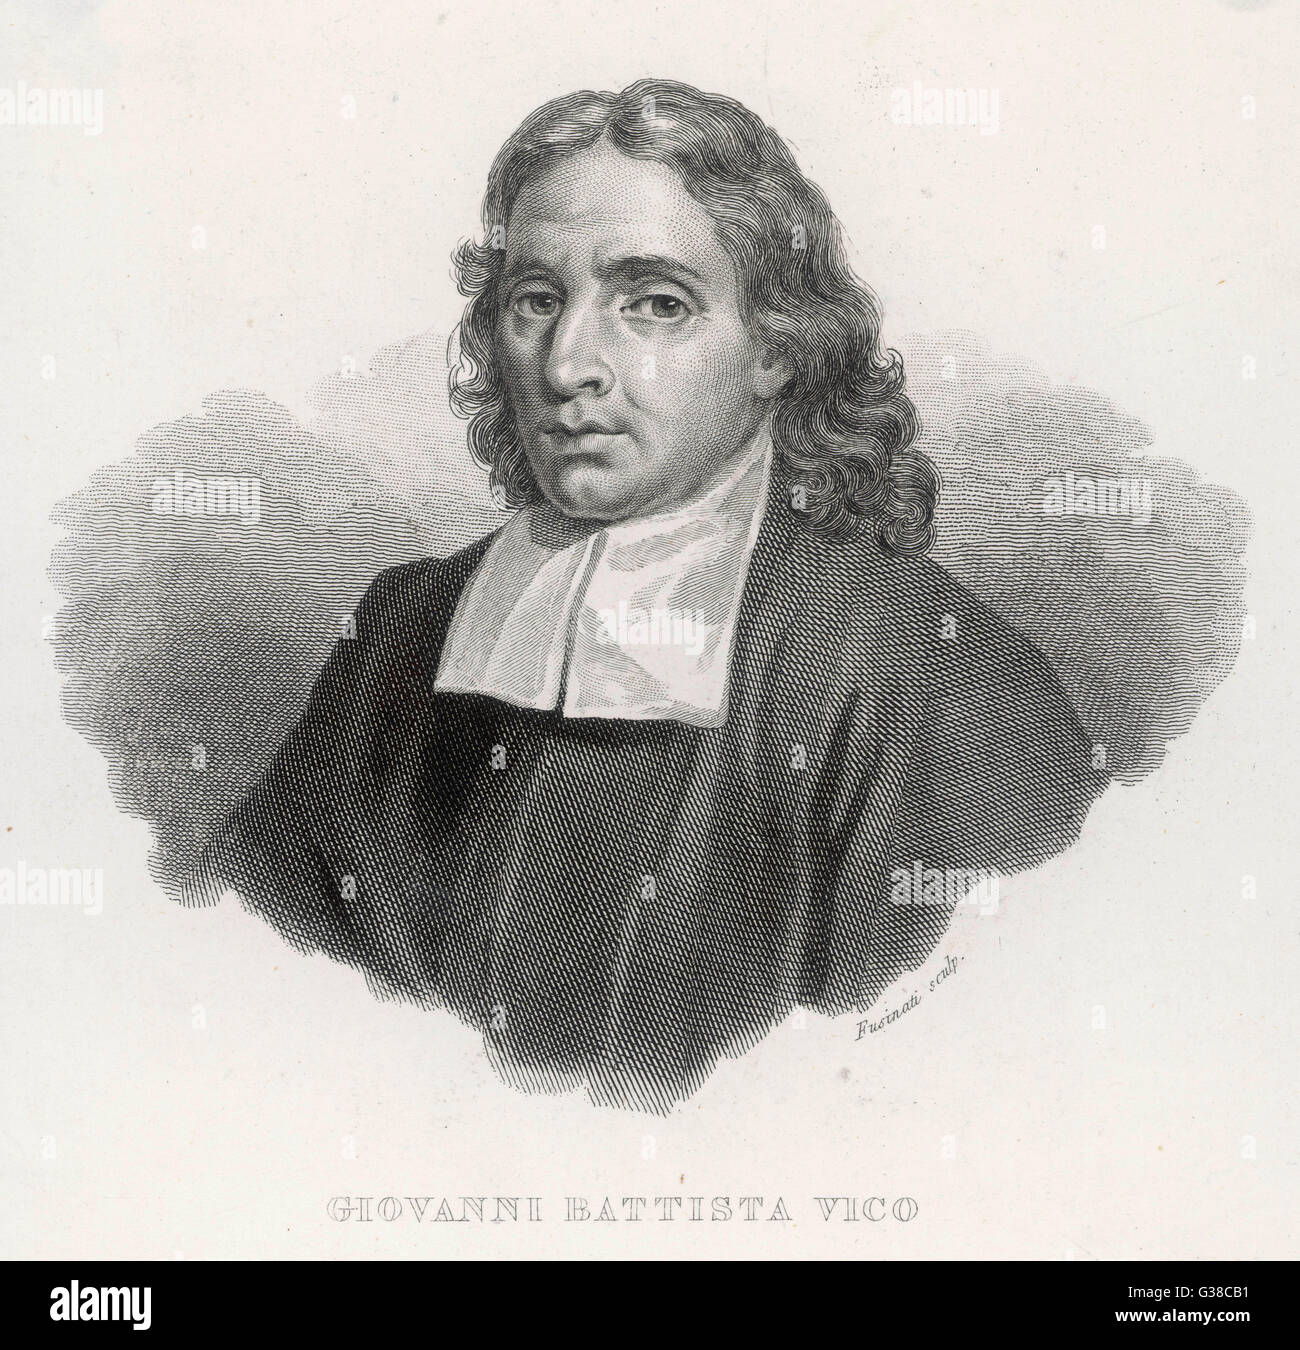 Giovanni Battista Vico - Italian Philosopher and Professor Stock Photo